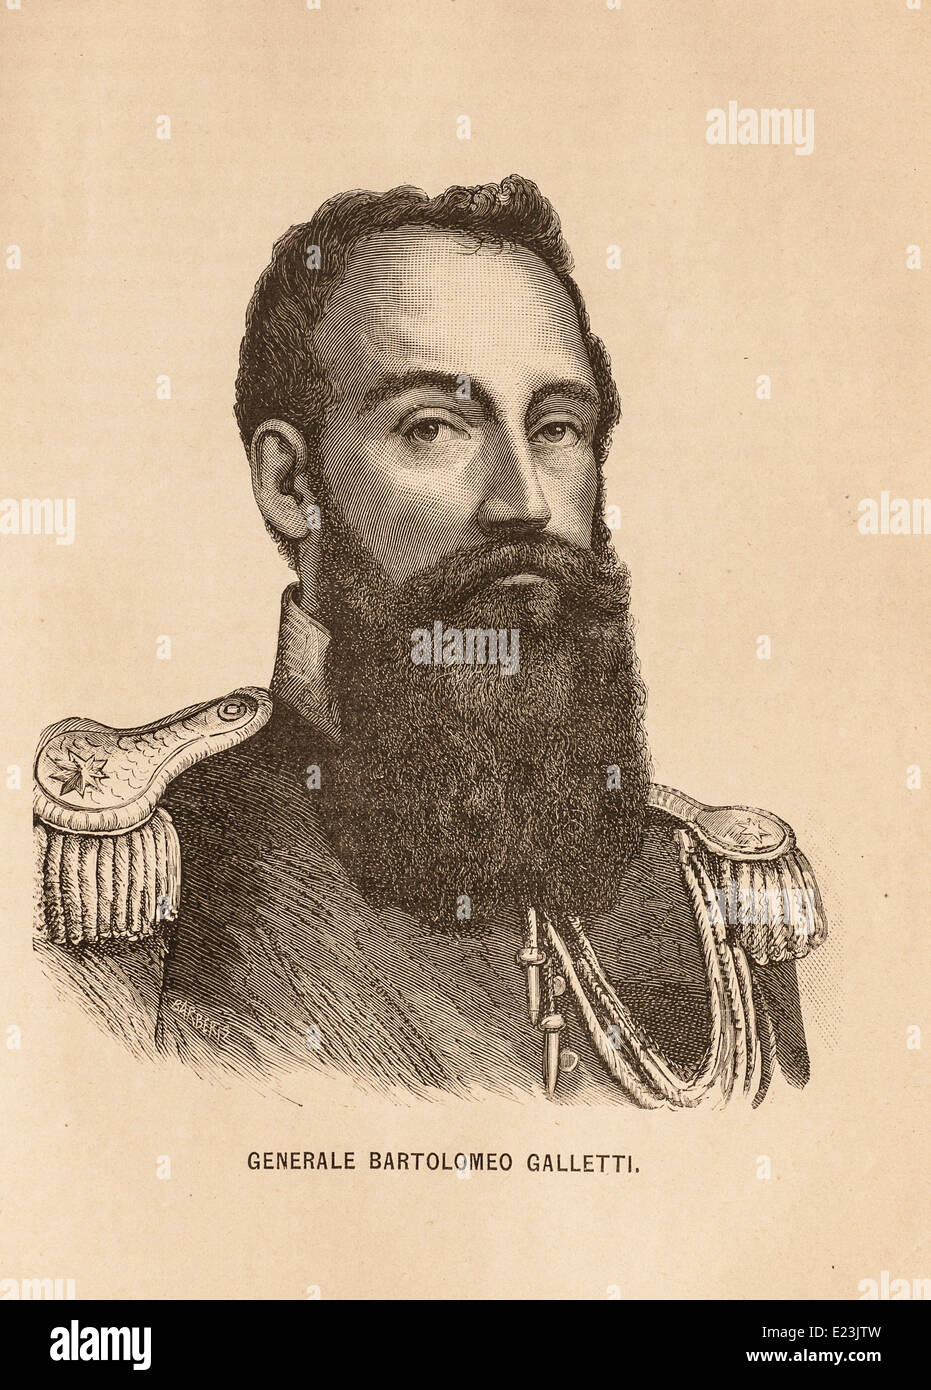 Giuseppe Mazzini aus dem Buch der Jessie W. Mario des Lebens von Mazzini. Portrait von General Bartolomeo Galletti Stockfoto